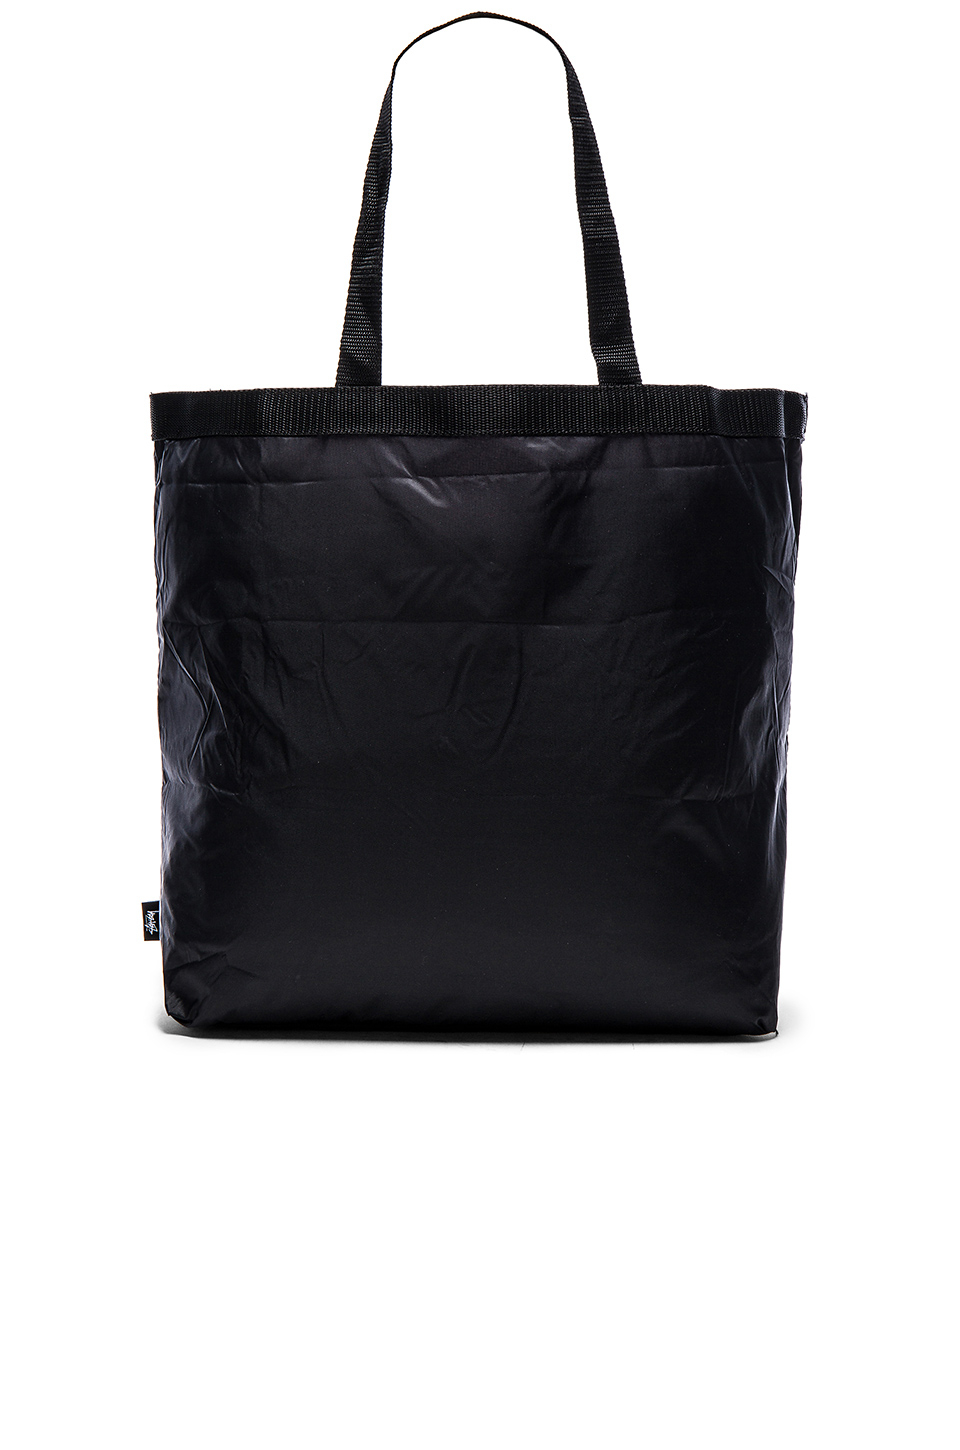 Lyst - Stussy Packable Tote Bag in Black